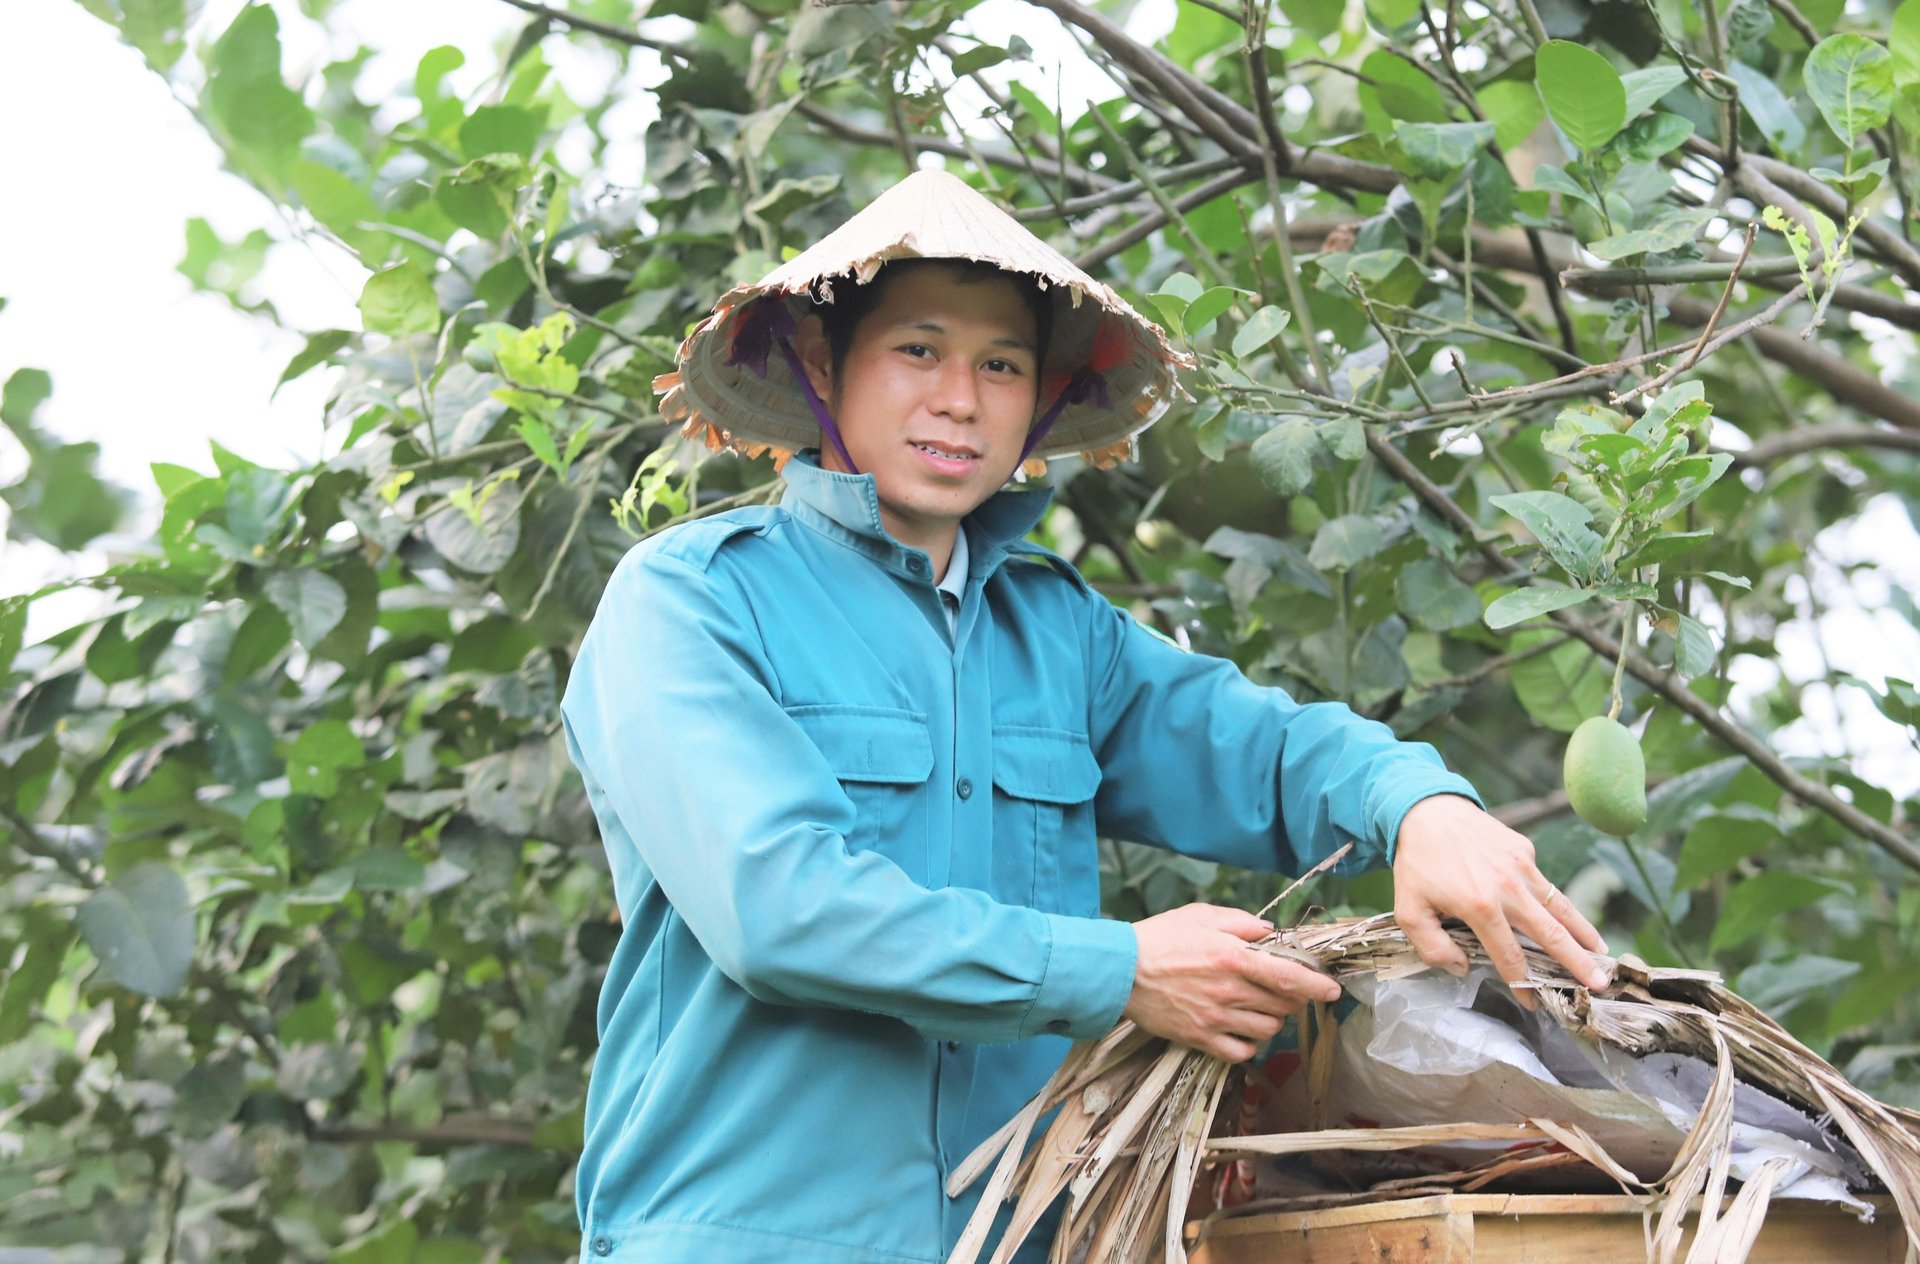 Ở vùng nông thôn huyện Hương Sơn, trang trại chăn nuôi tổng hợp của anh Ngư là điểm sáng để nhiều thanh niên học tập. Ảnh: Thanh Nga.